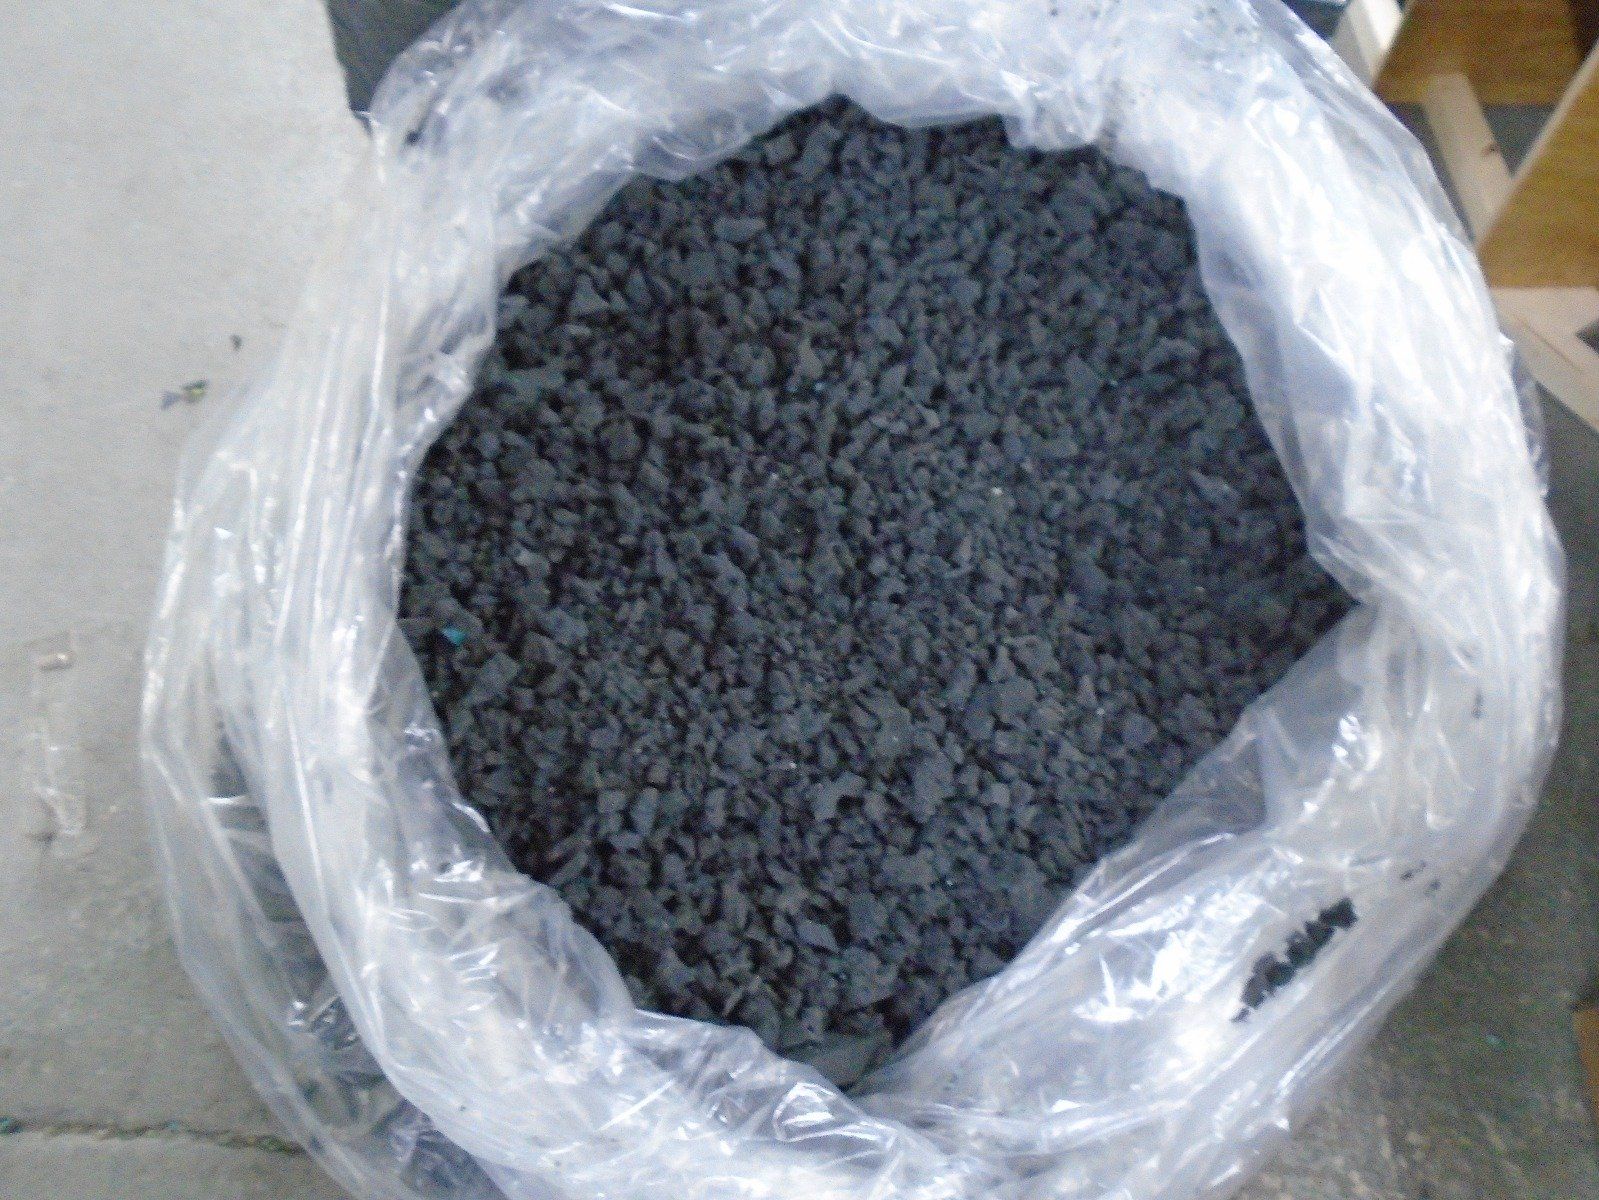 charcoal shredded foam